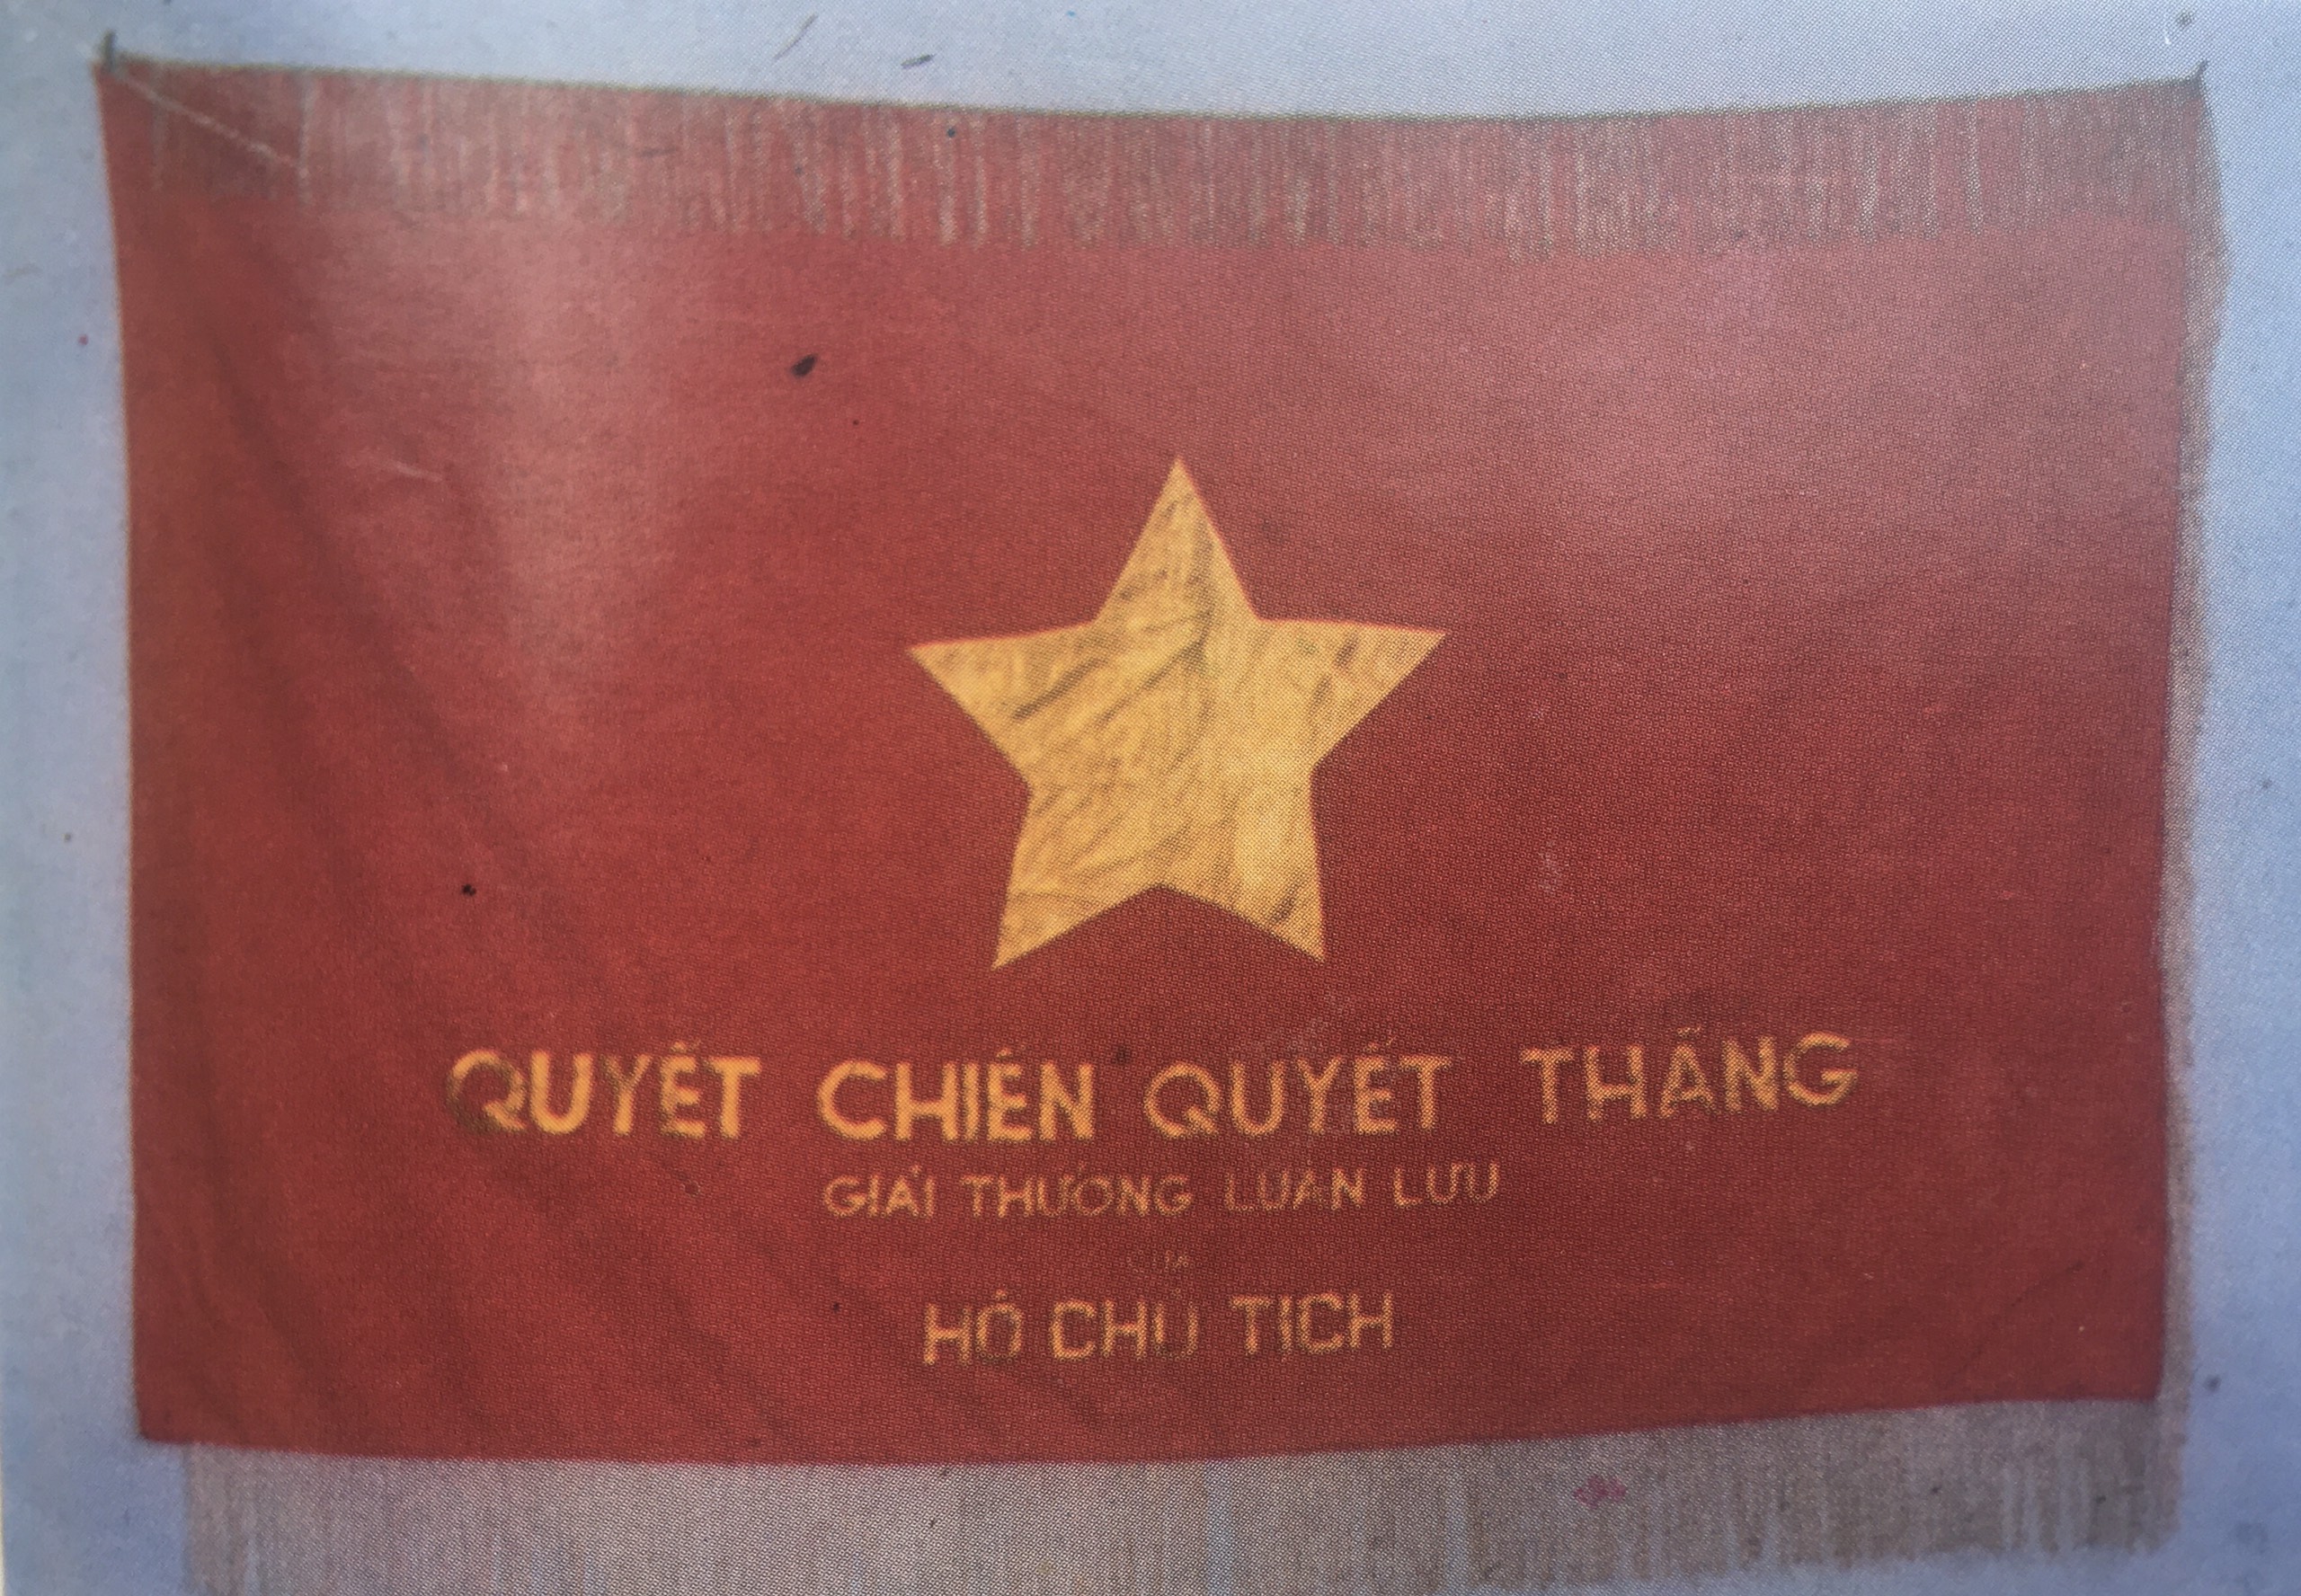 Hình ảnh: Cờ luân lưu của Hồ Chủ tịch tặng Đảng bộ và nhân dân Thừa Thiên Huế trong chiến dịch Đông Xuân 1953-1954(Nguồn: Bảo tàng Lịch sử Thừa Thiên Huế)